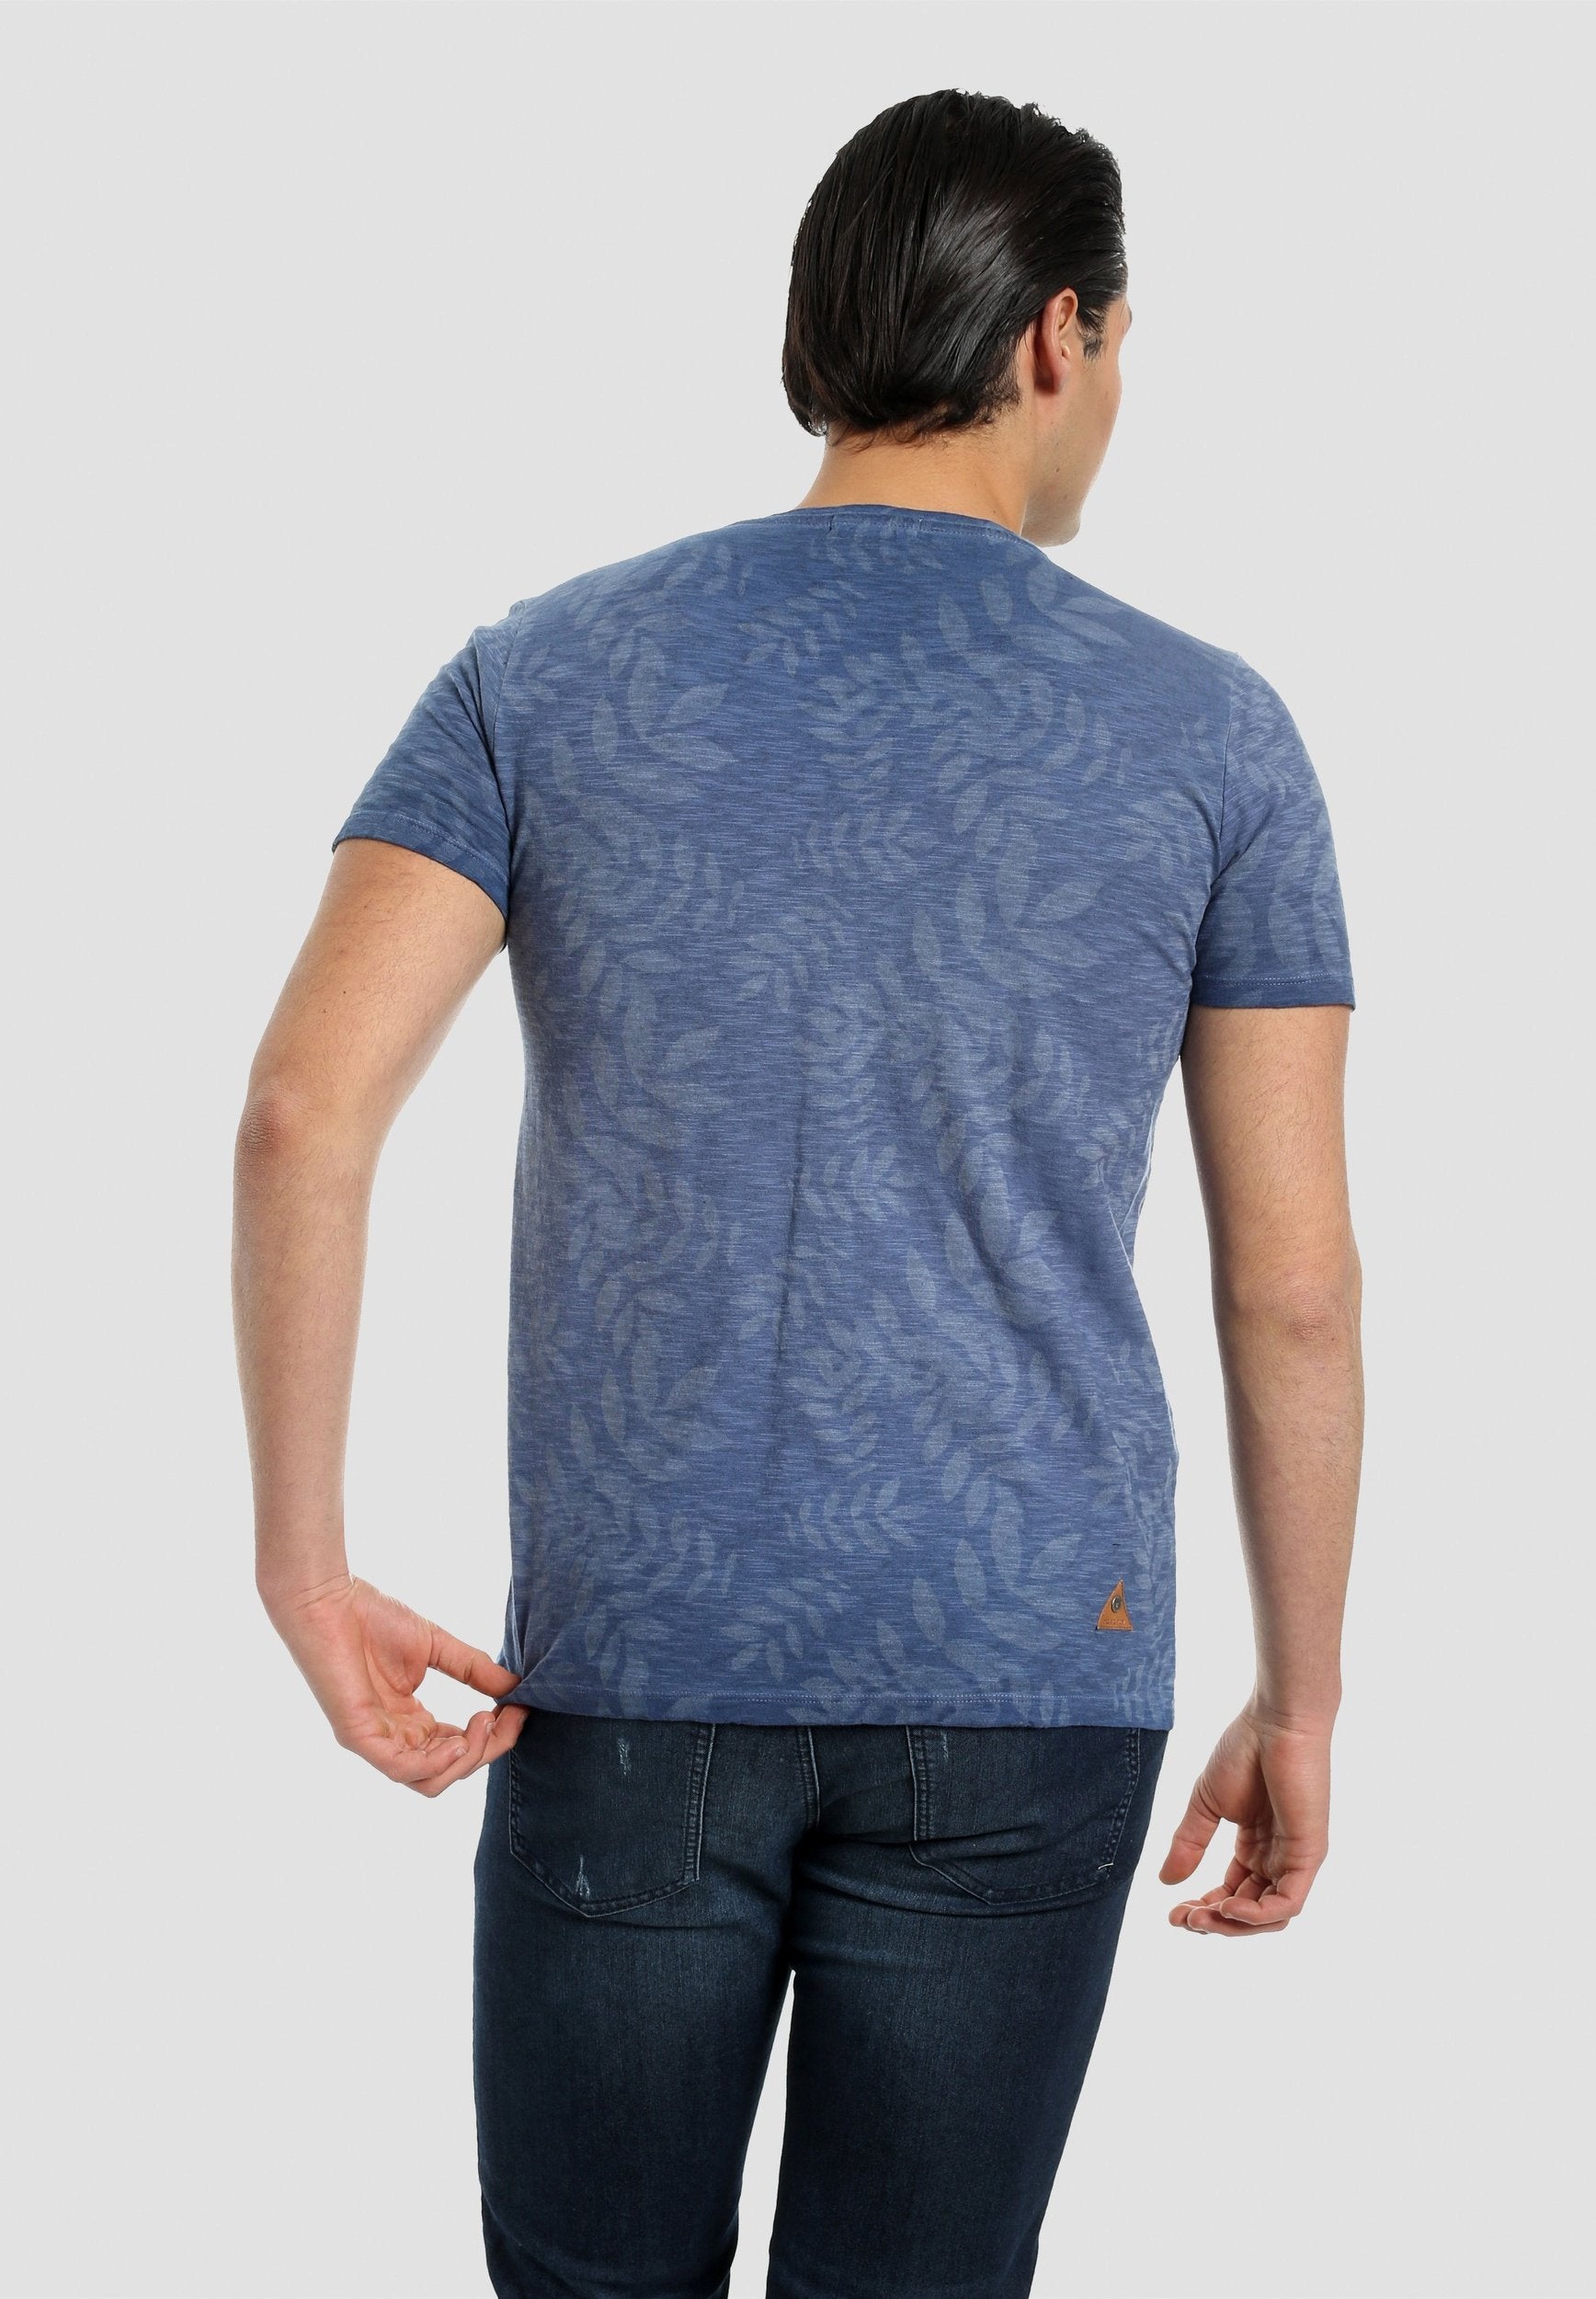 Herren T-Shirt aus Bio-Baumwolle mit Allover-Print in Vintage-Optik